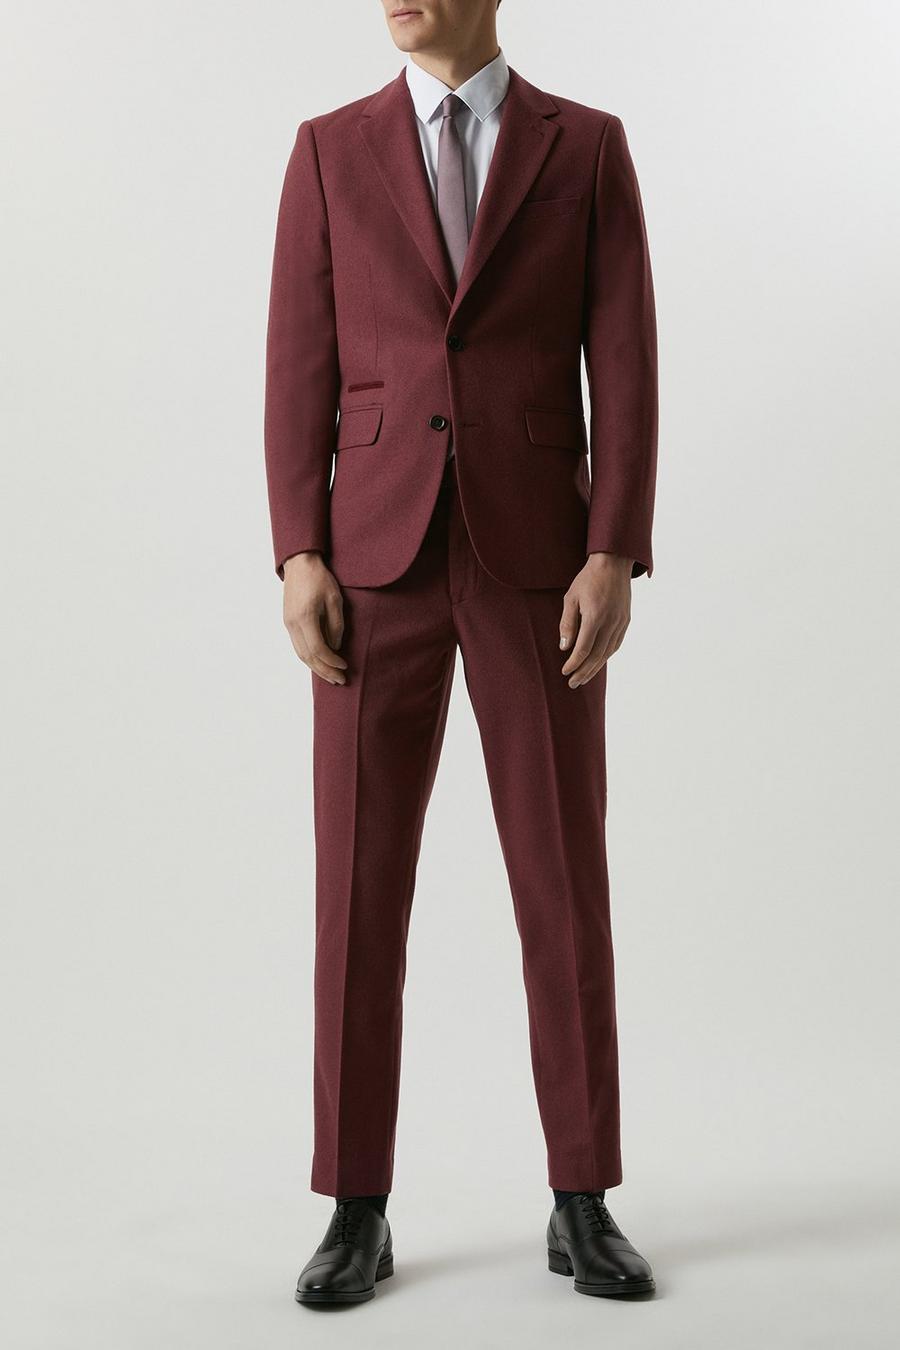 Slim Fit Burgundy Tweed Suit Jacket